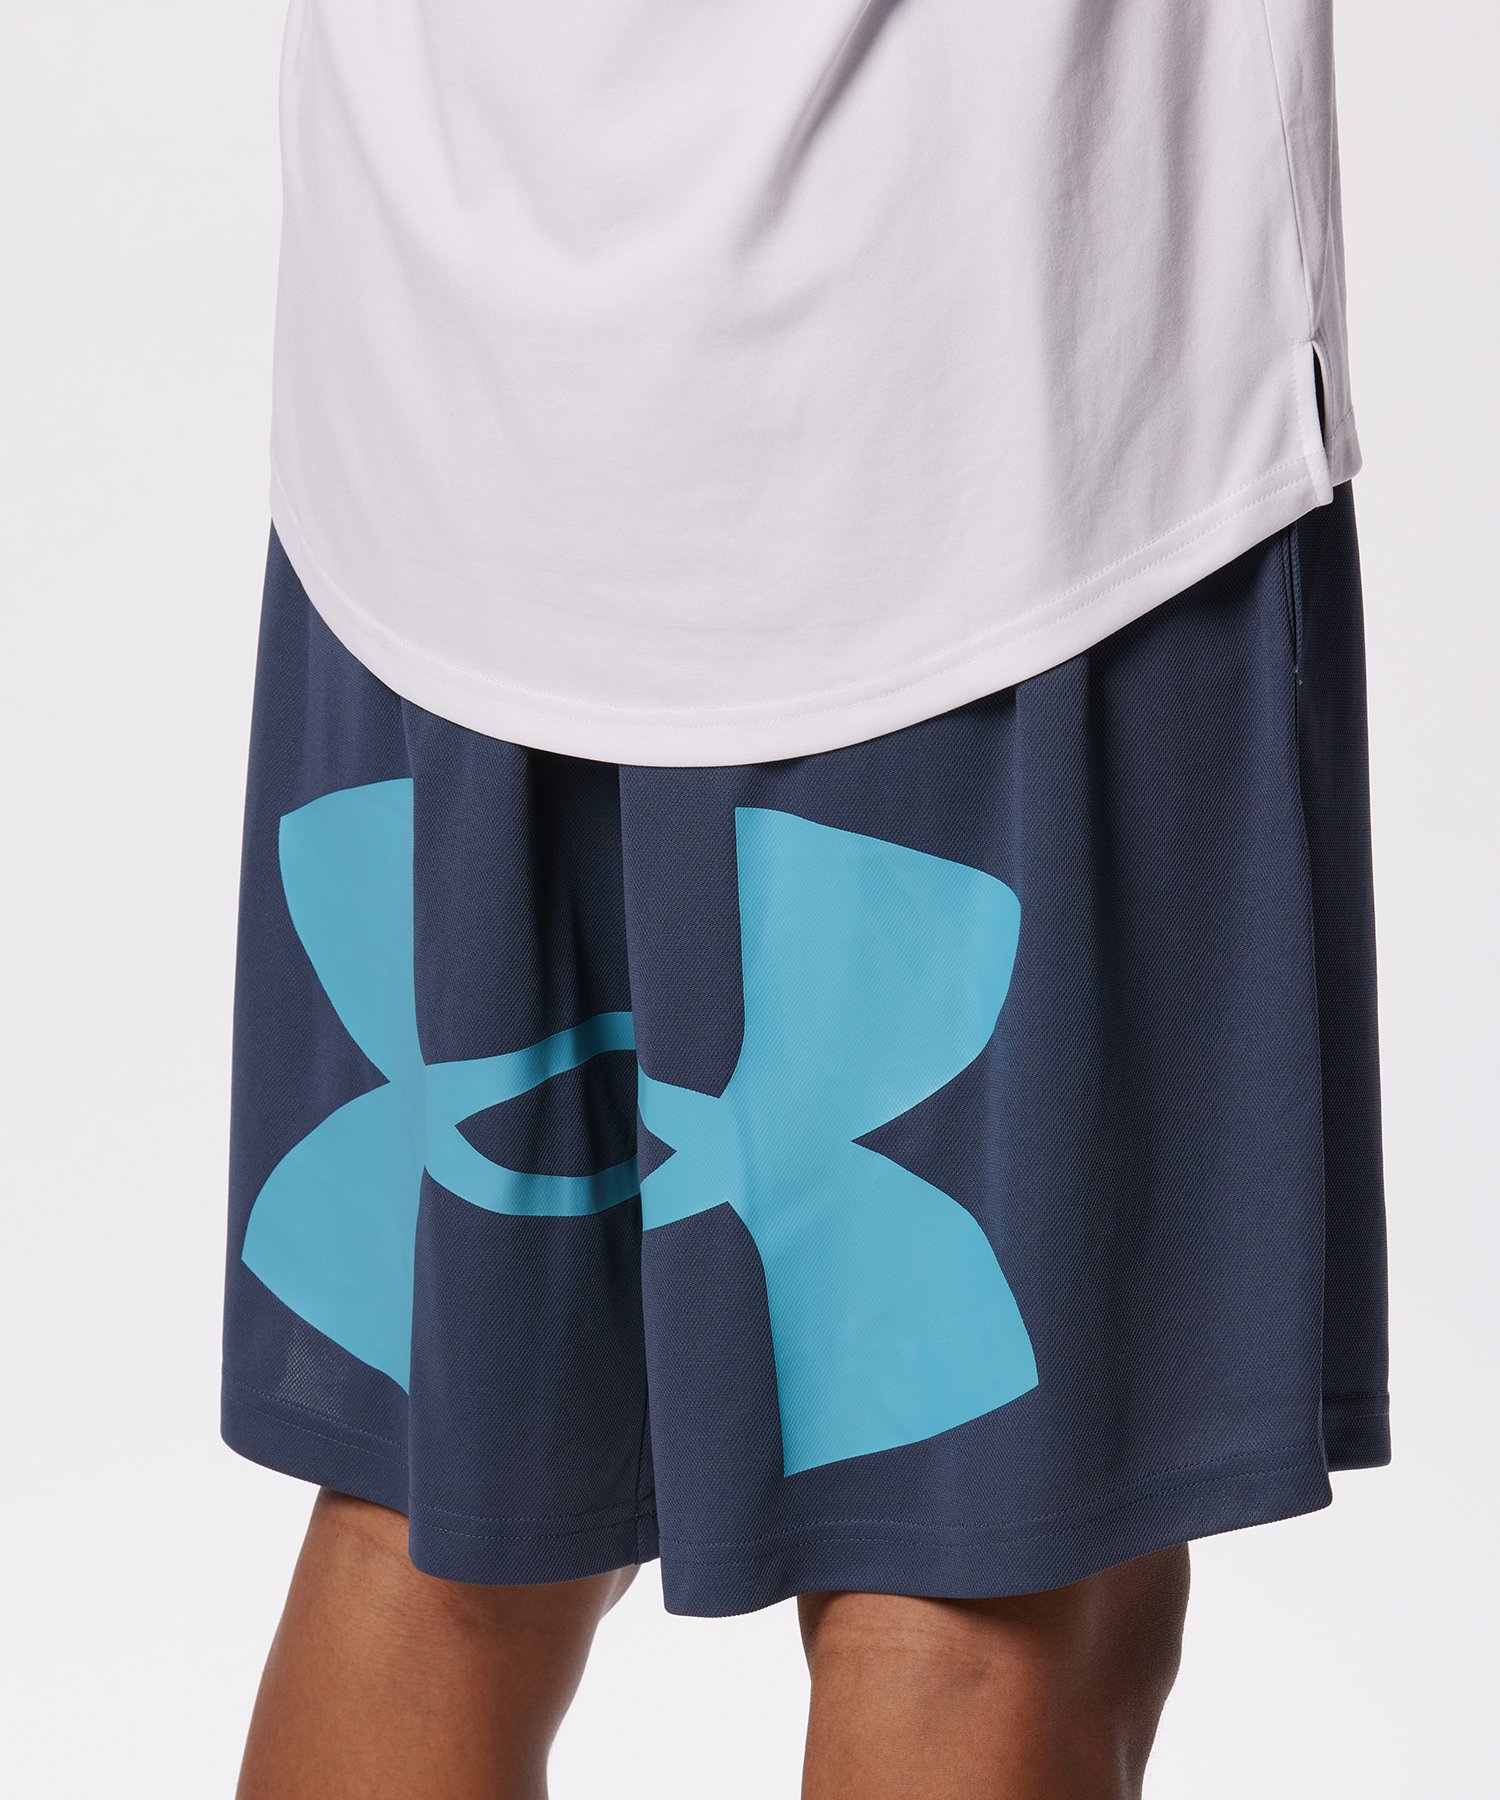 [40%OFF] официальный Under Armor UNDER ARMOUR мужской баскетбол шорты UA основа линия шорты ( большой Logo )ba Span шорты 